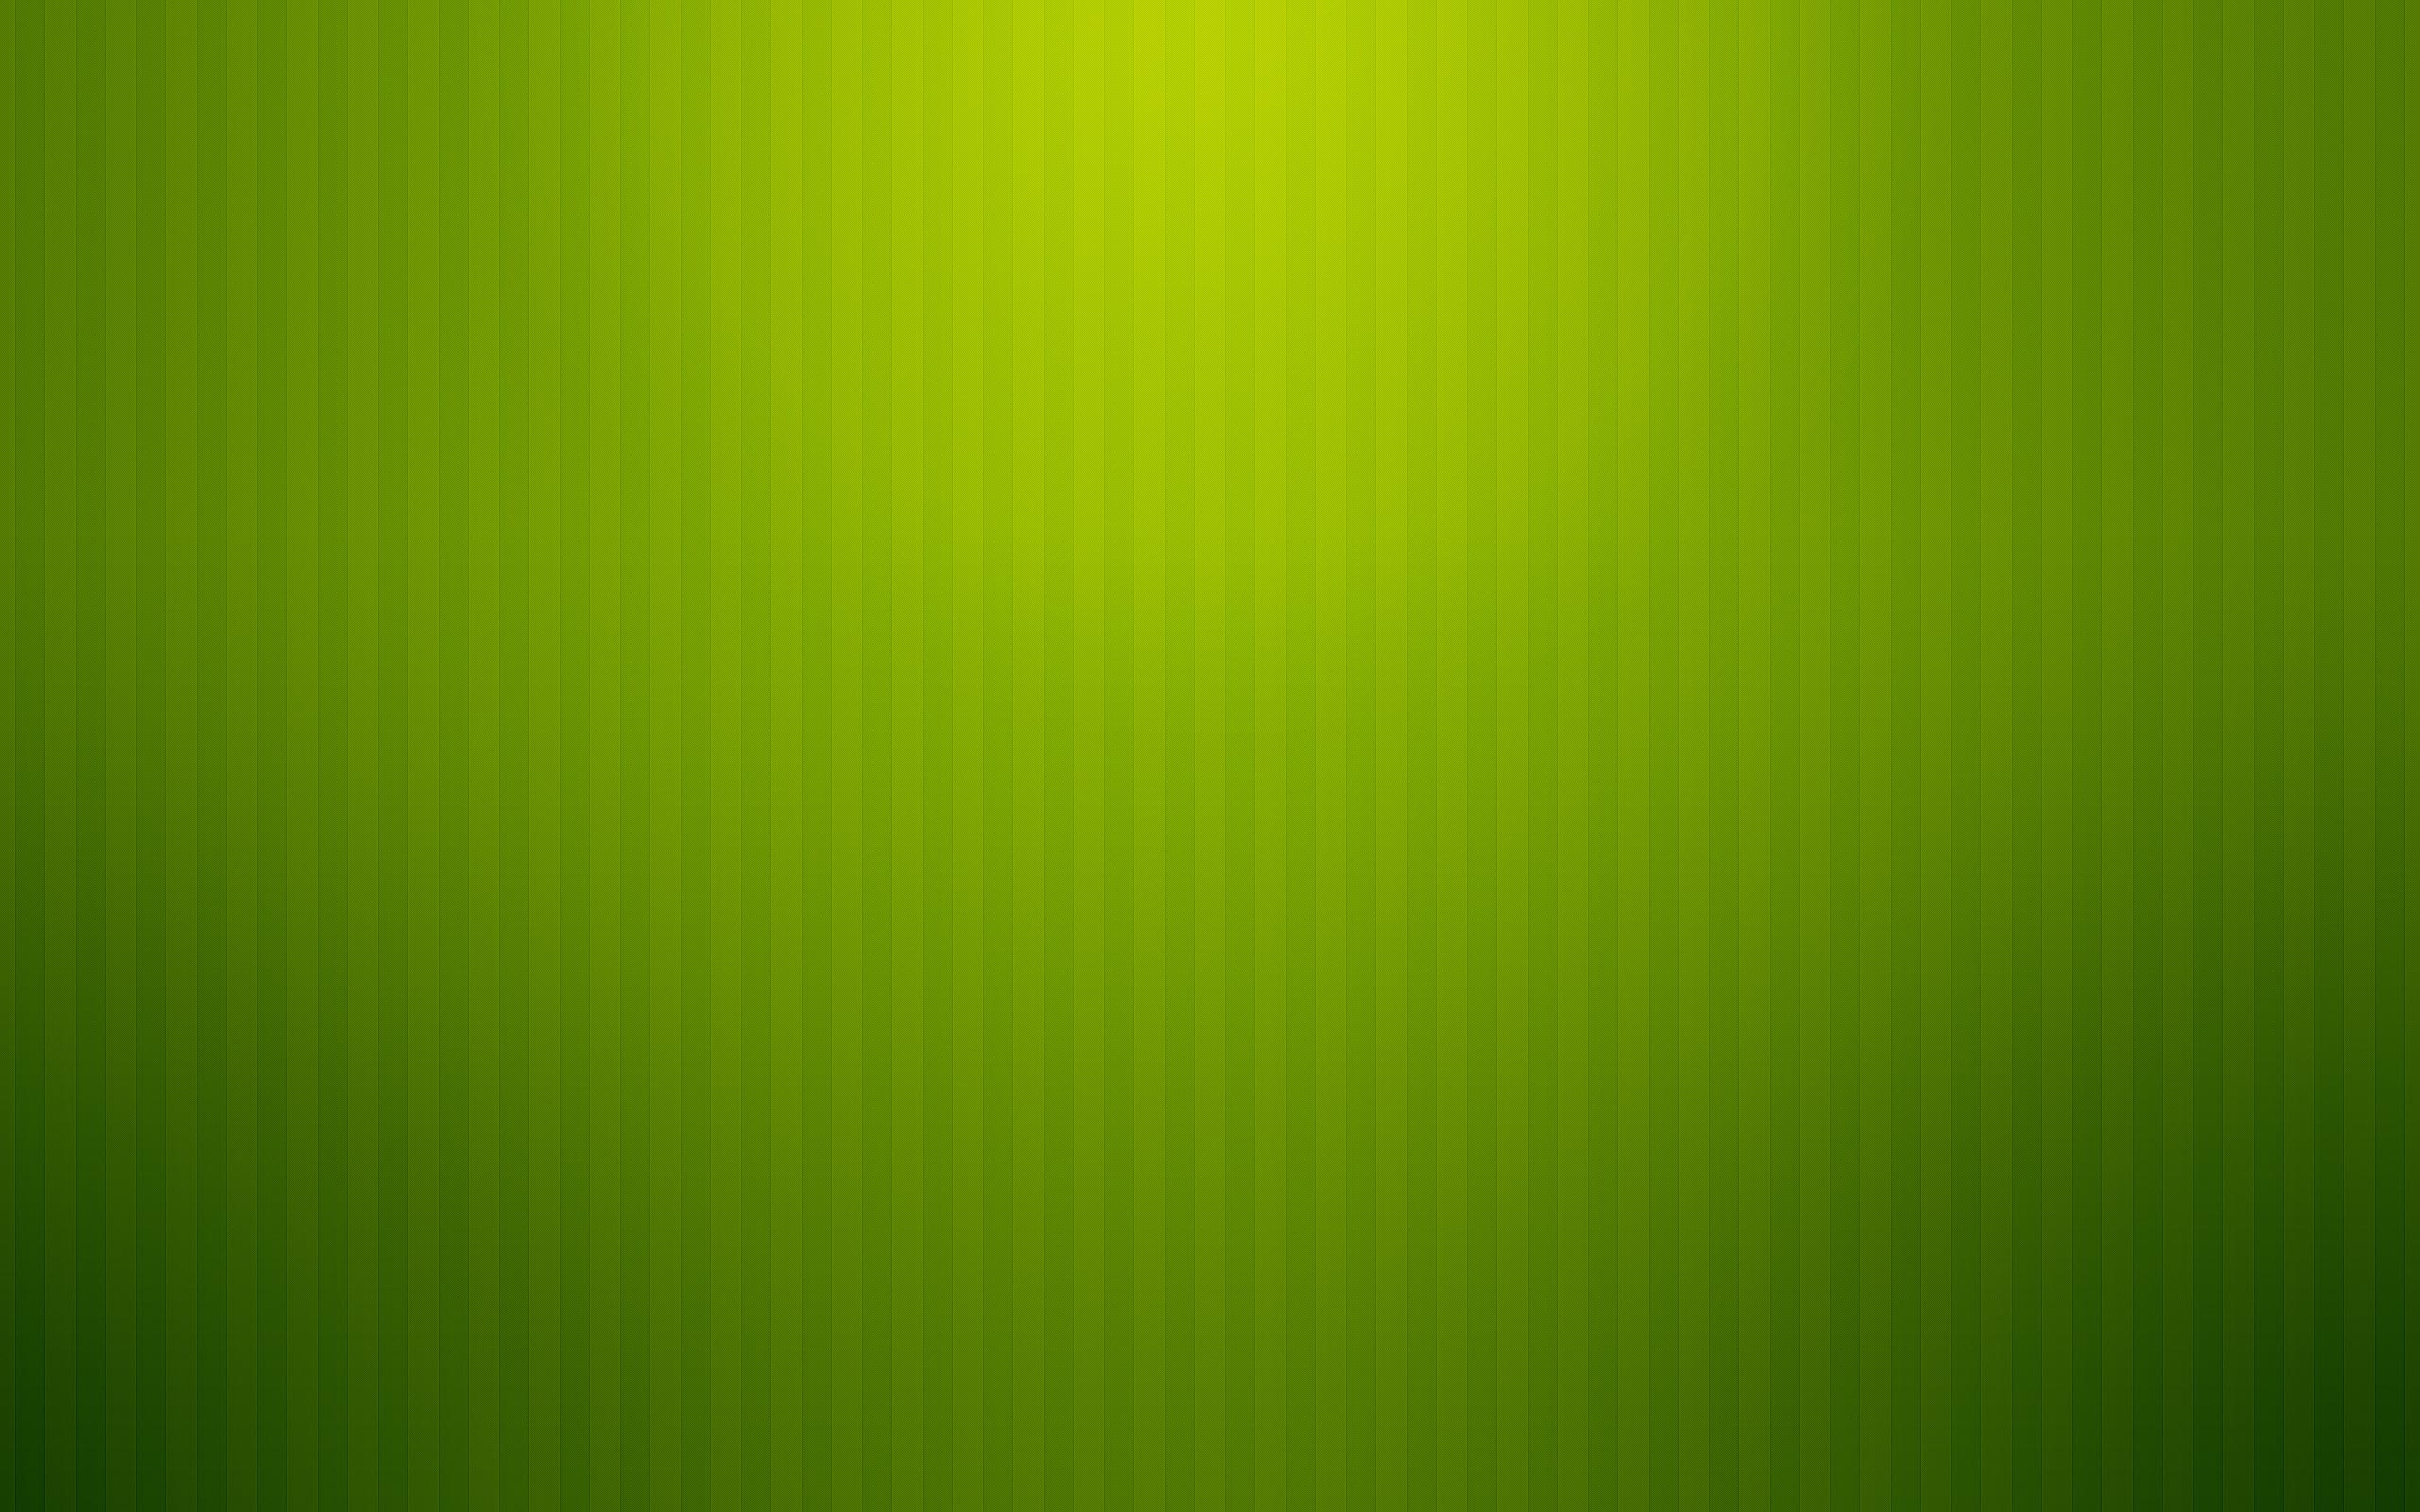  Wallpapers For Desktop Background Full Screen Green Light Wallpaper